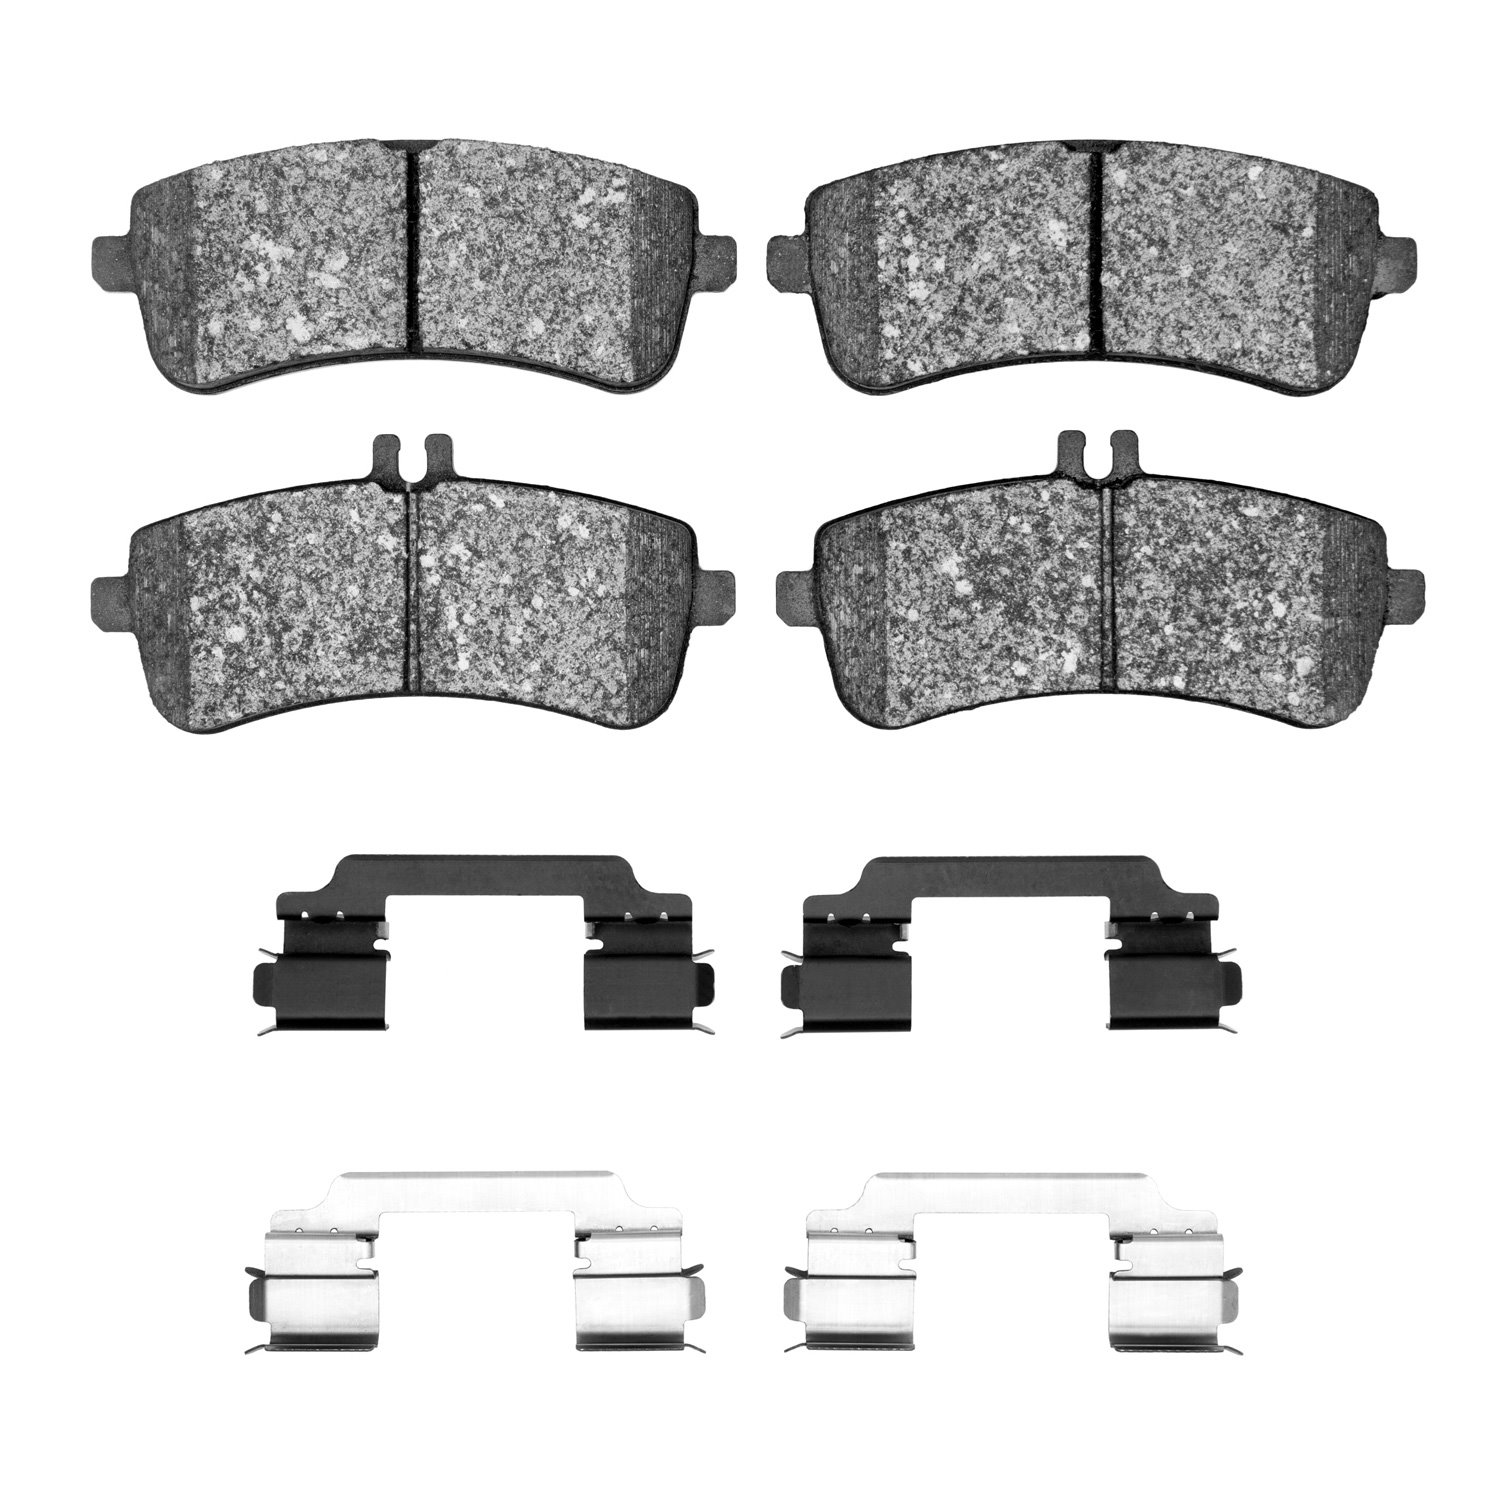 1311-1681-01 3000-Series Semi-Metallic Brake Pads & Hardware Kit, 2013-2021 Mercedes-Benz, Position: Rear